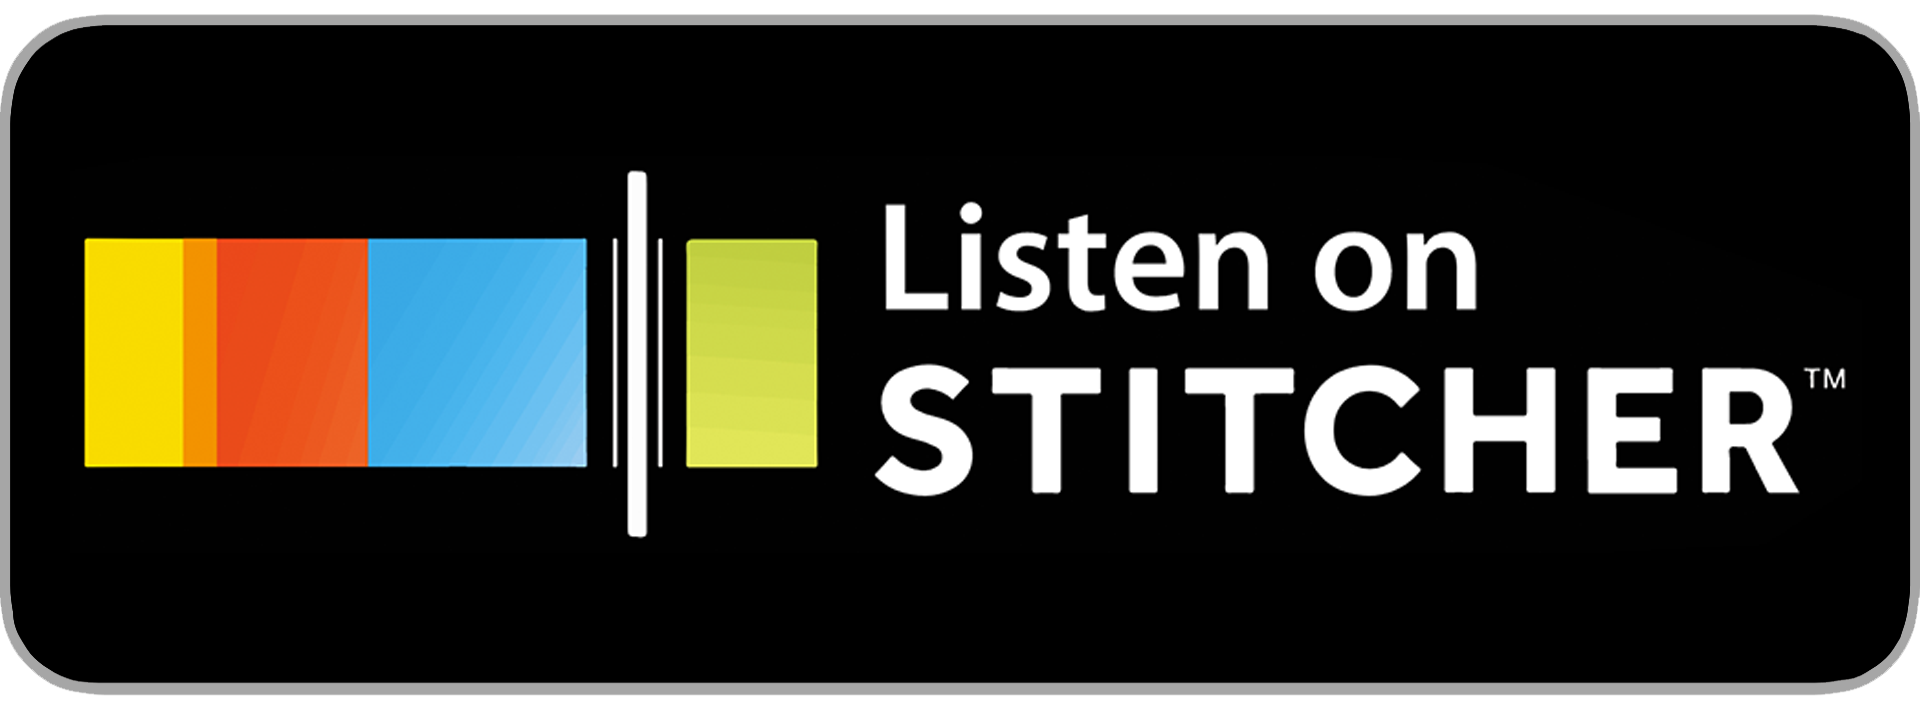 stitcher-listen-badge.png